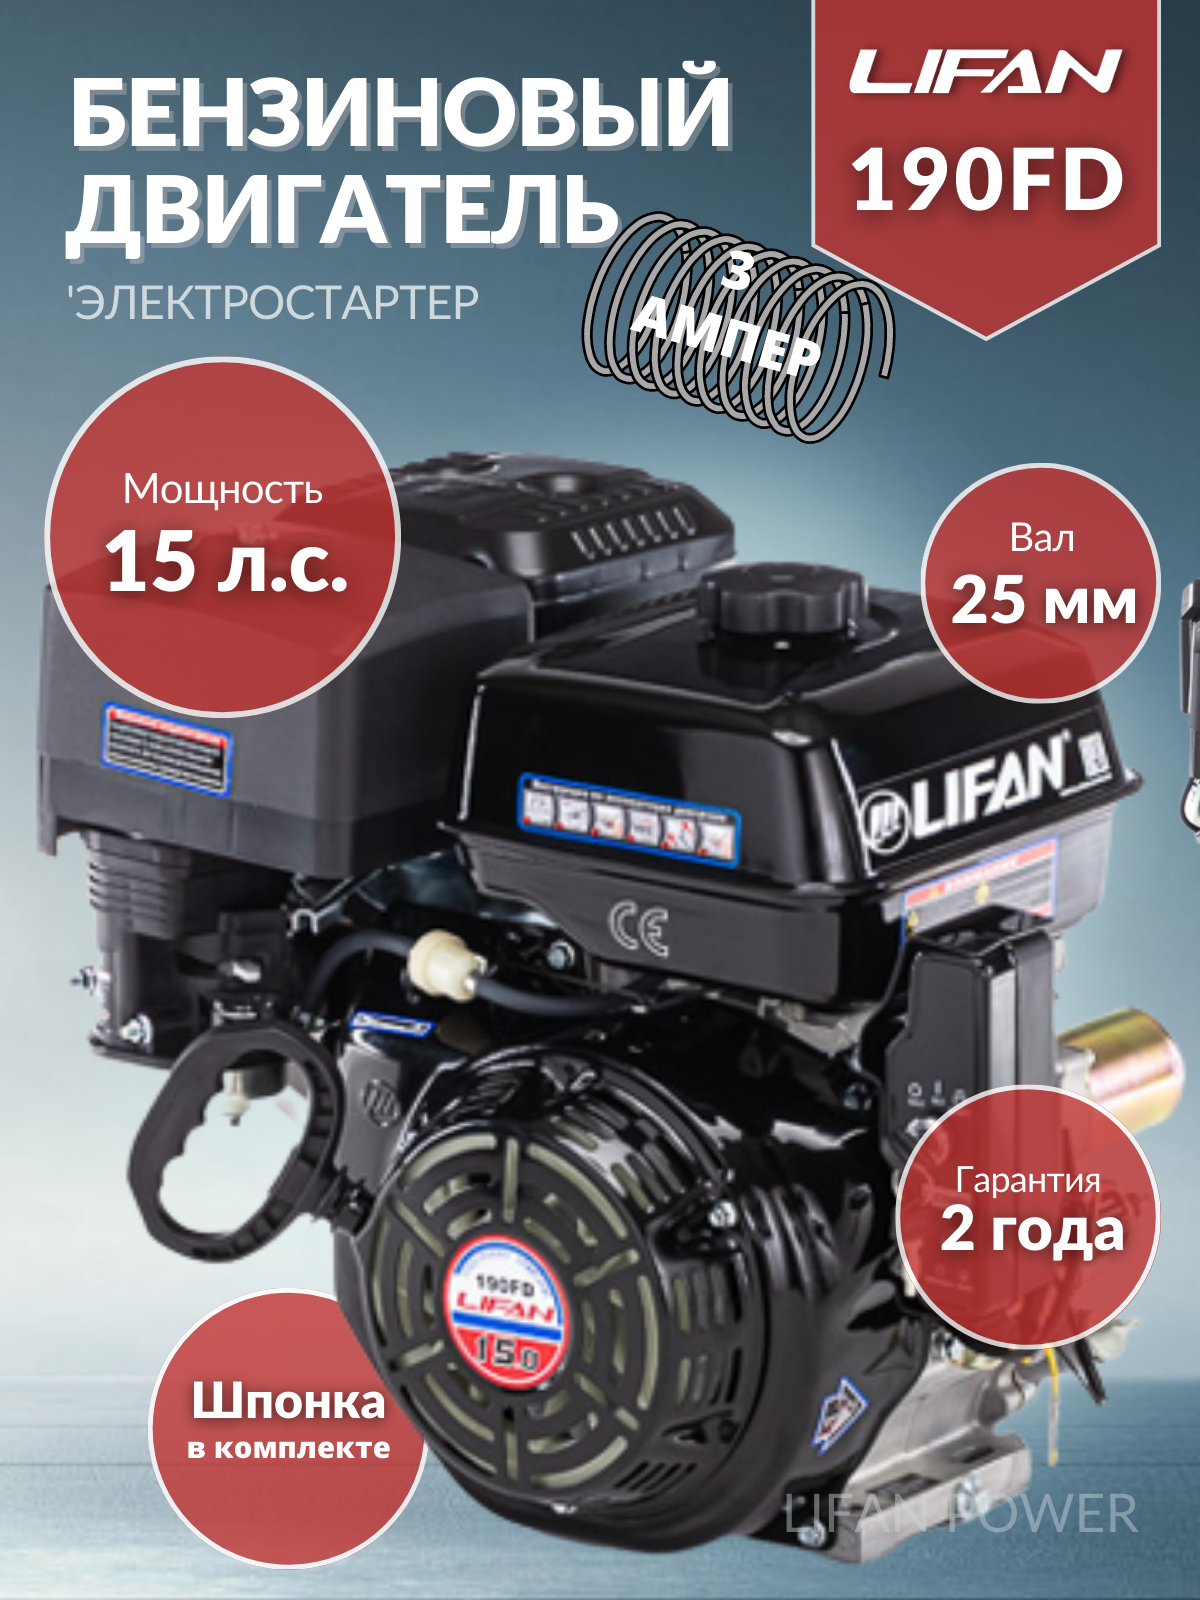 Двигатель бензиновый Lifan 190FD -3А электростартер (15,0л. с. вал 25 мм, электростартер, катушка 3 А)